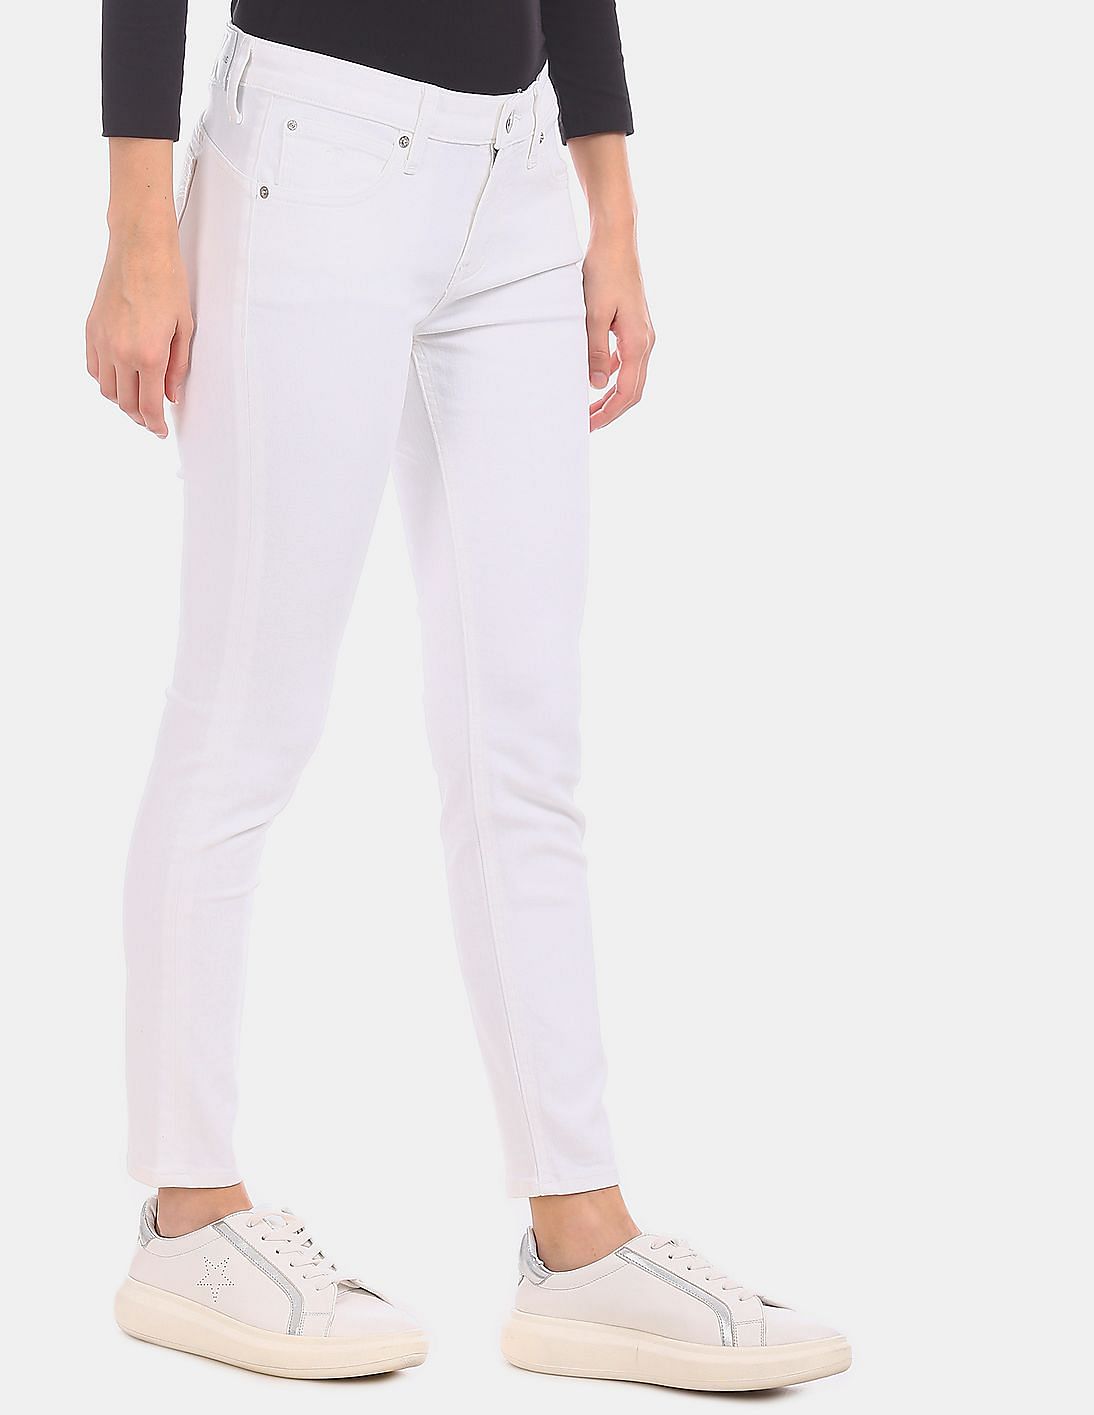 Buy Calvin Klein Women White Slim Fit Mid Waist Infinite Flex Jeans ...